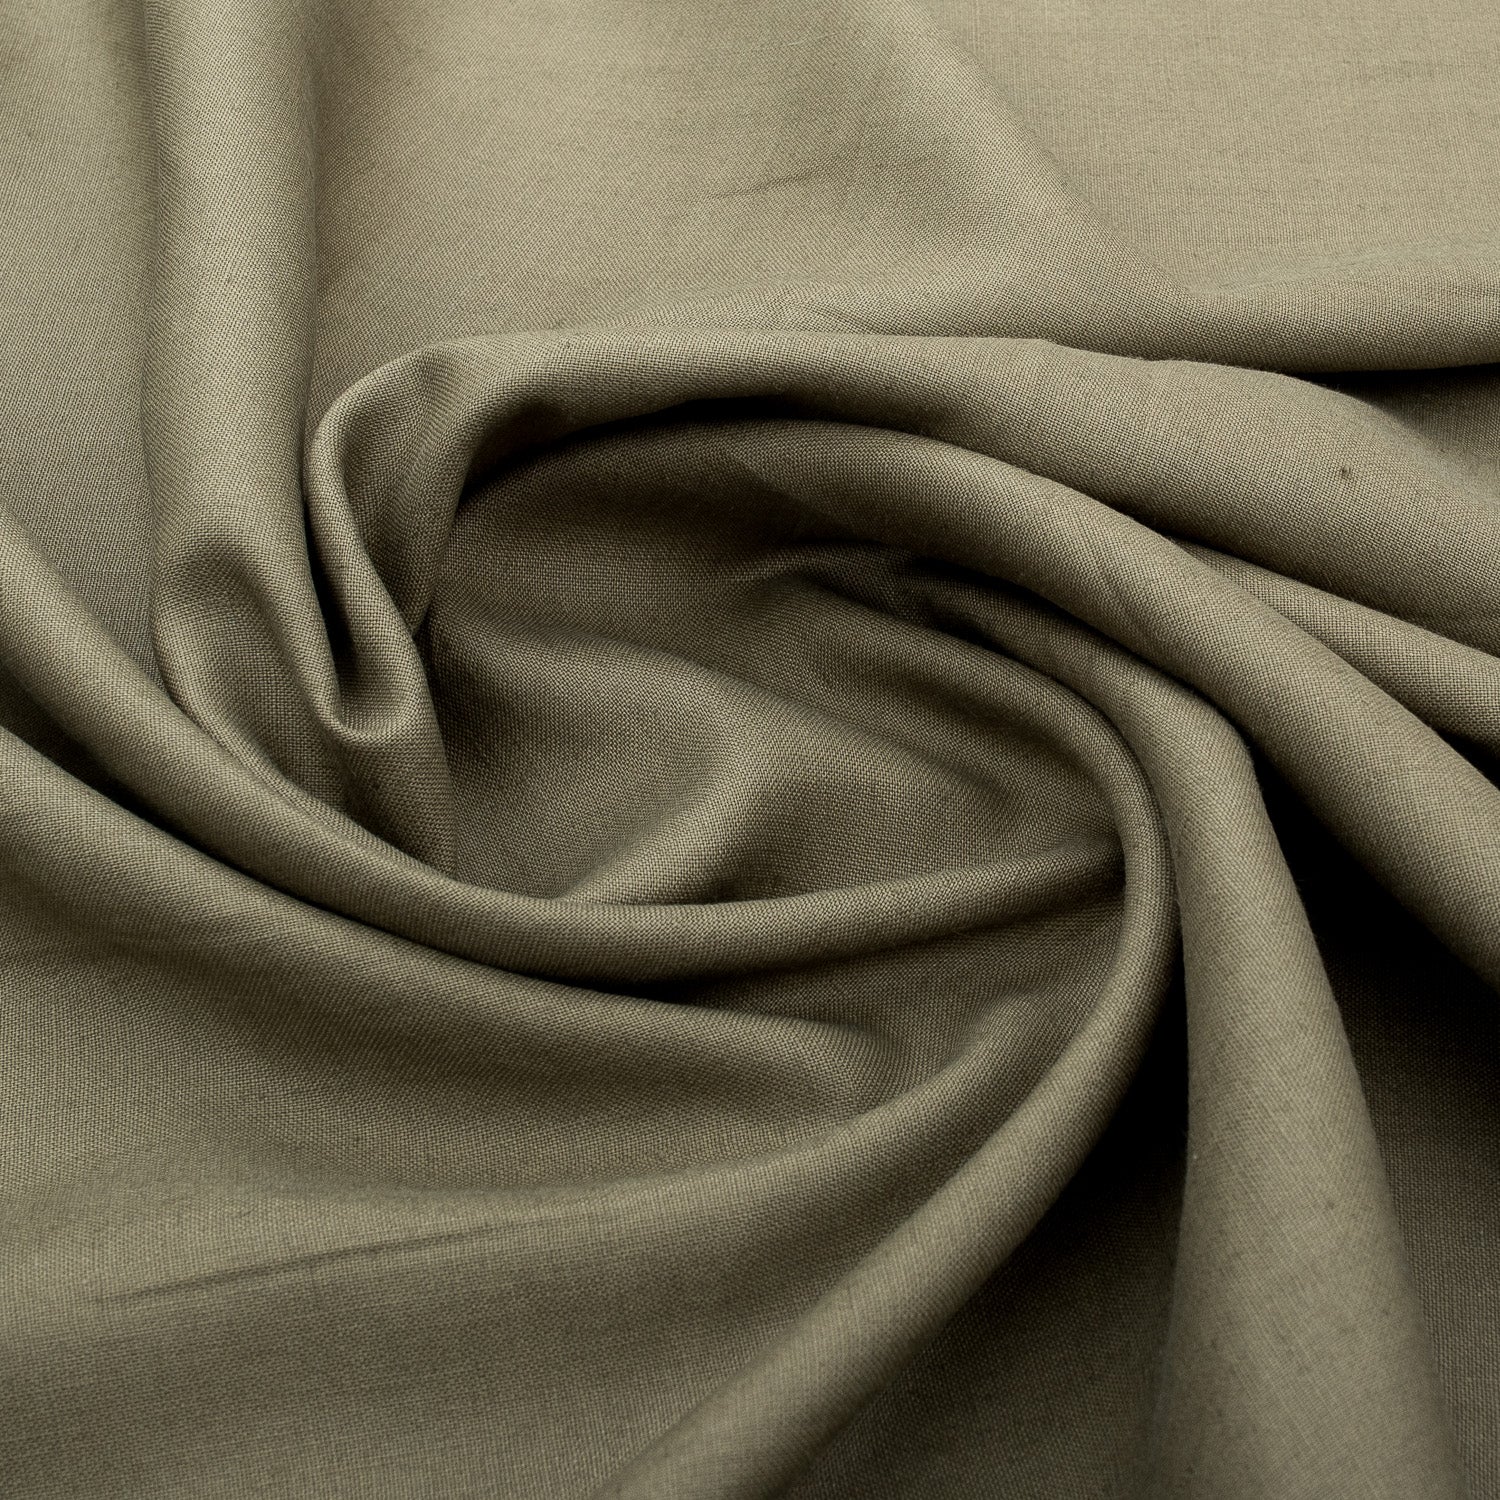 Buy 100% Linen Fabrics Online at Best Prices From de Linum Australia!